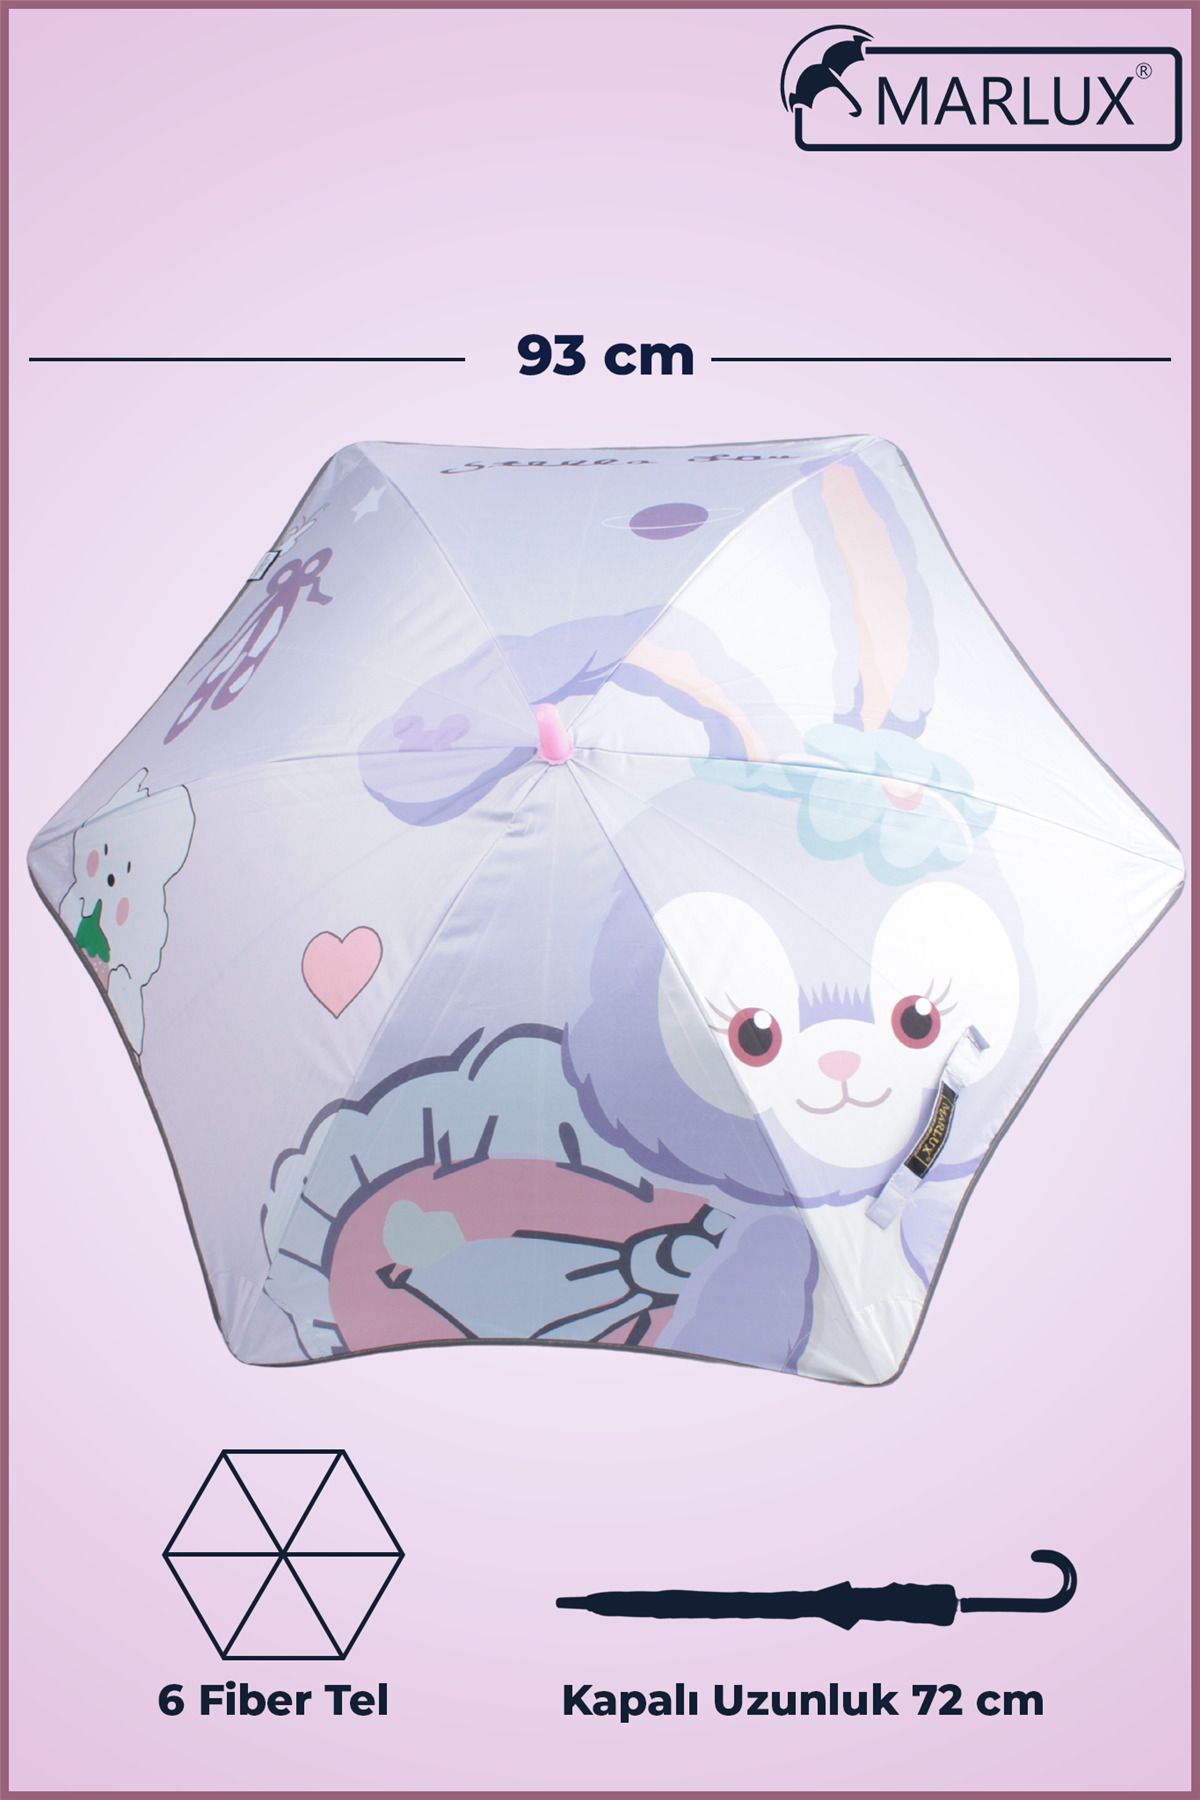 Marlux Fiber 6 Telli Dayanıklı Özel Tasarım Çocuk Şemsiyesi Sevimli Tavşanlar Desenli Mar1099